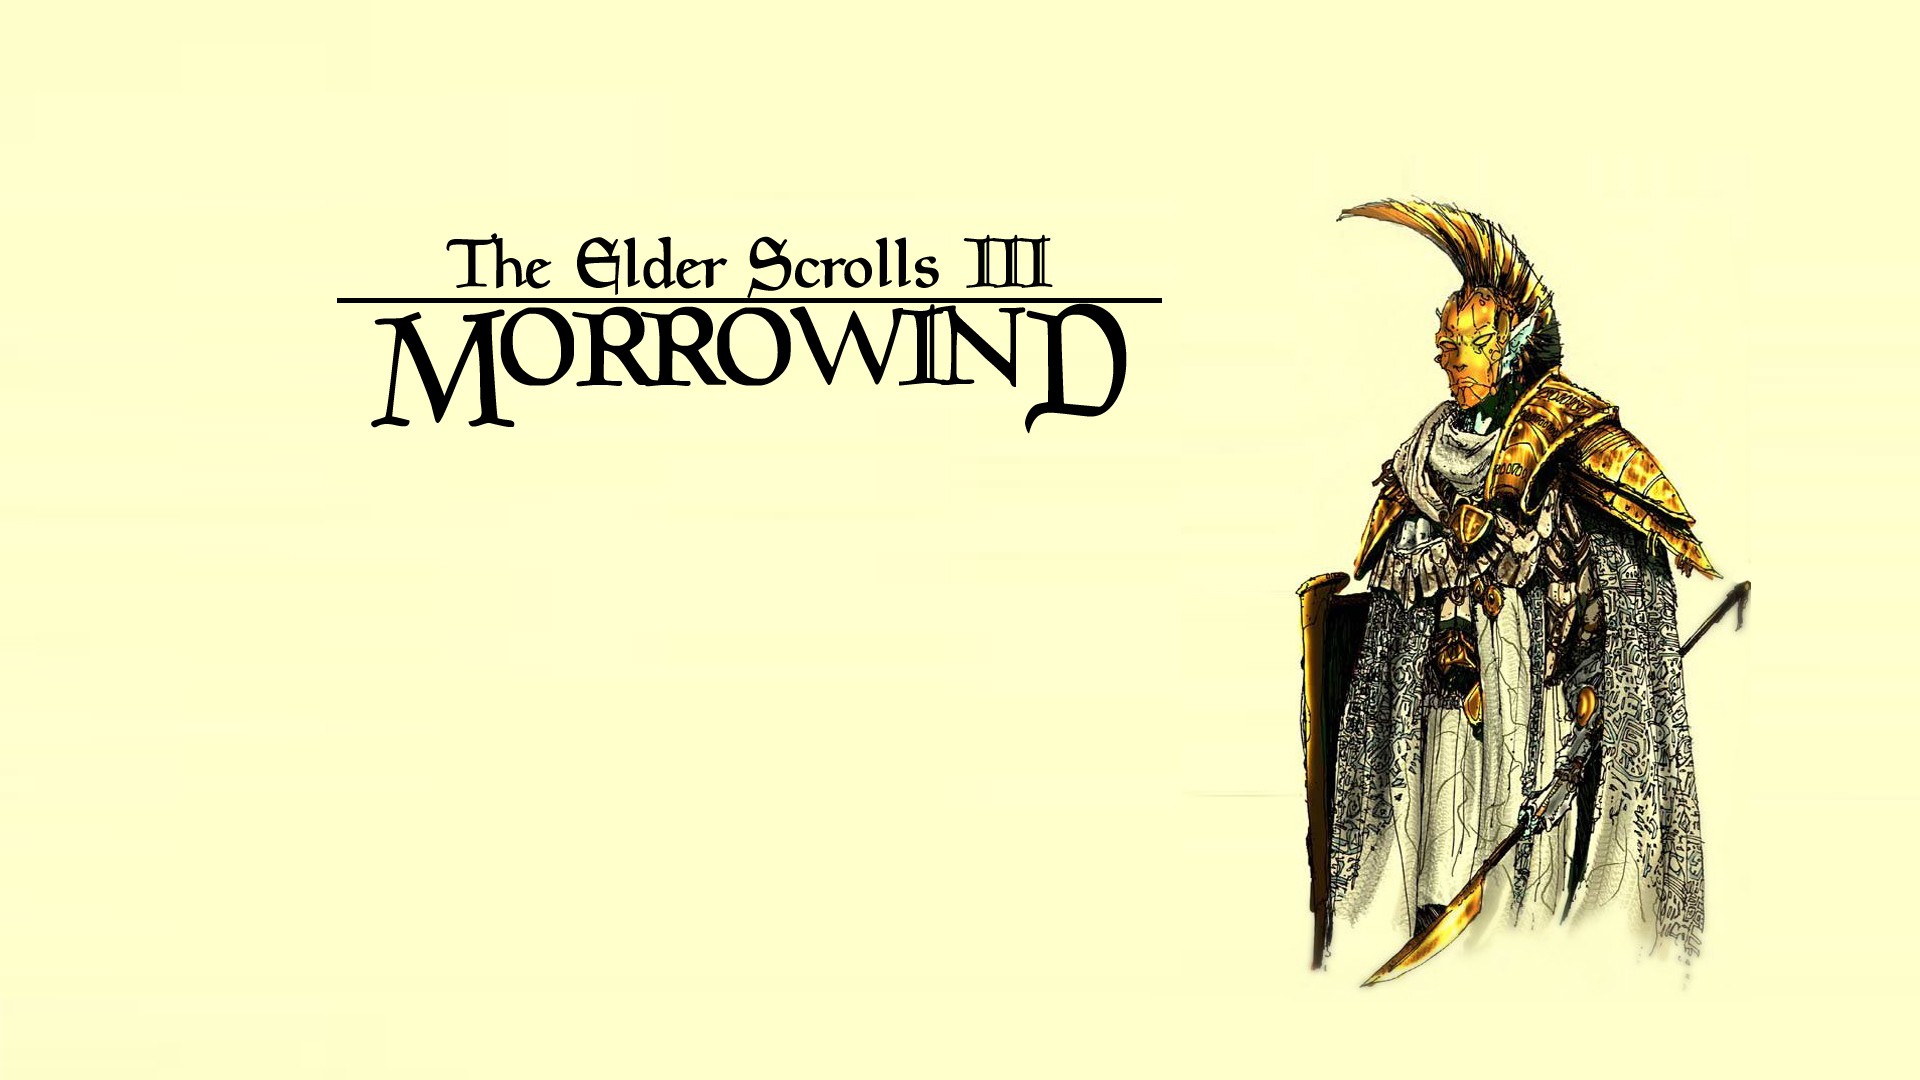 The Elder Scrolls Iii Morrowind Video Game Art RPG Simple Background 1920x1080